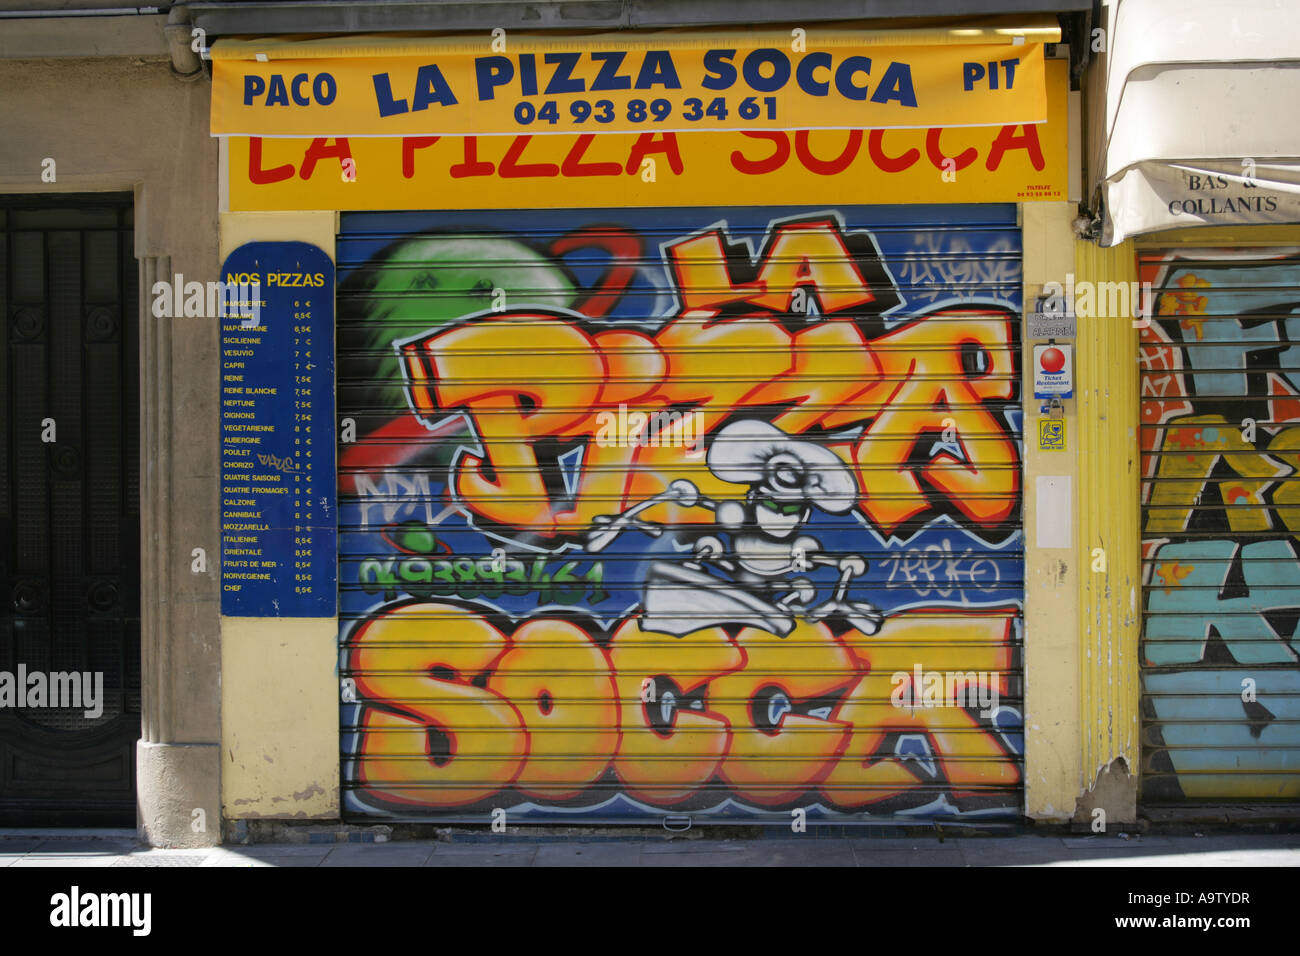 Exemple de graffiti légal utilisé comme décoration sur le rideau de sécurité d'une pizzeria, Nice France Banque D'Images